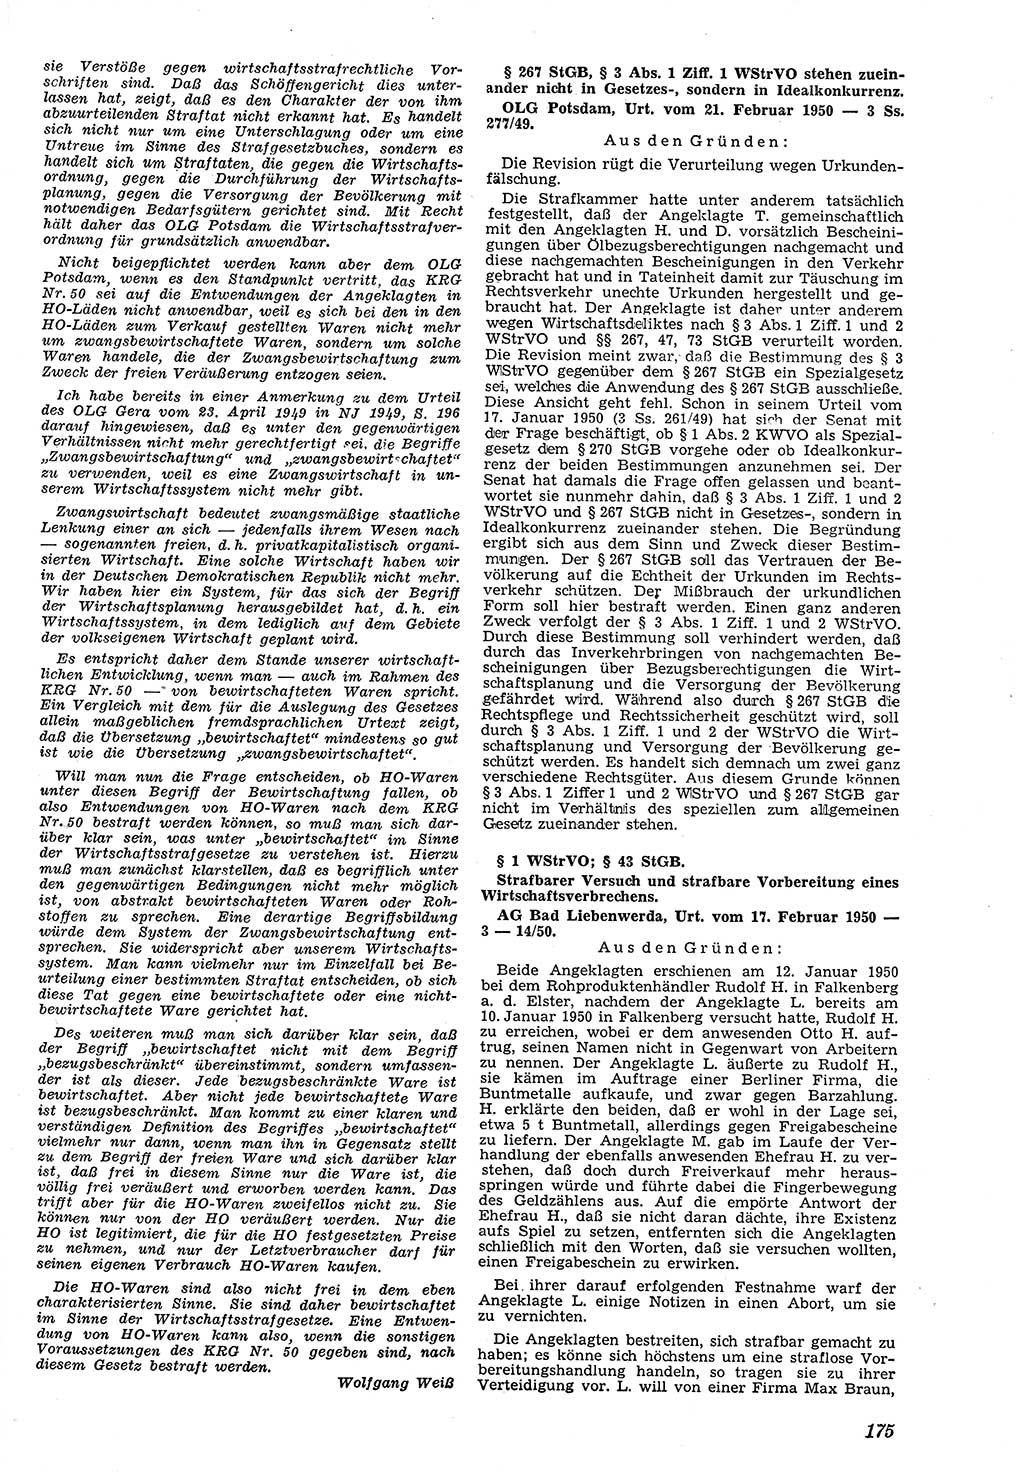 Neue Justiz (NJ), Zeitschrift für Recht und Rechtswissenschaft [Deutsche Demokratische Republik (DDR)], 4. Jahrgang 1950, Seite 175 (NJ DDR 1950, S. 175)